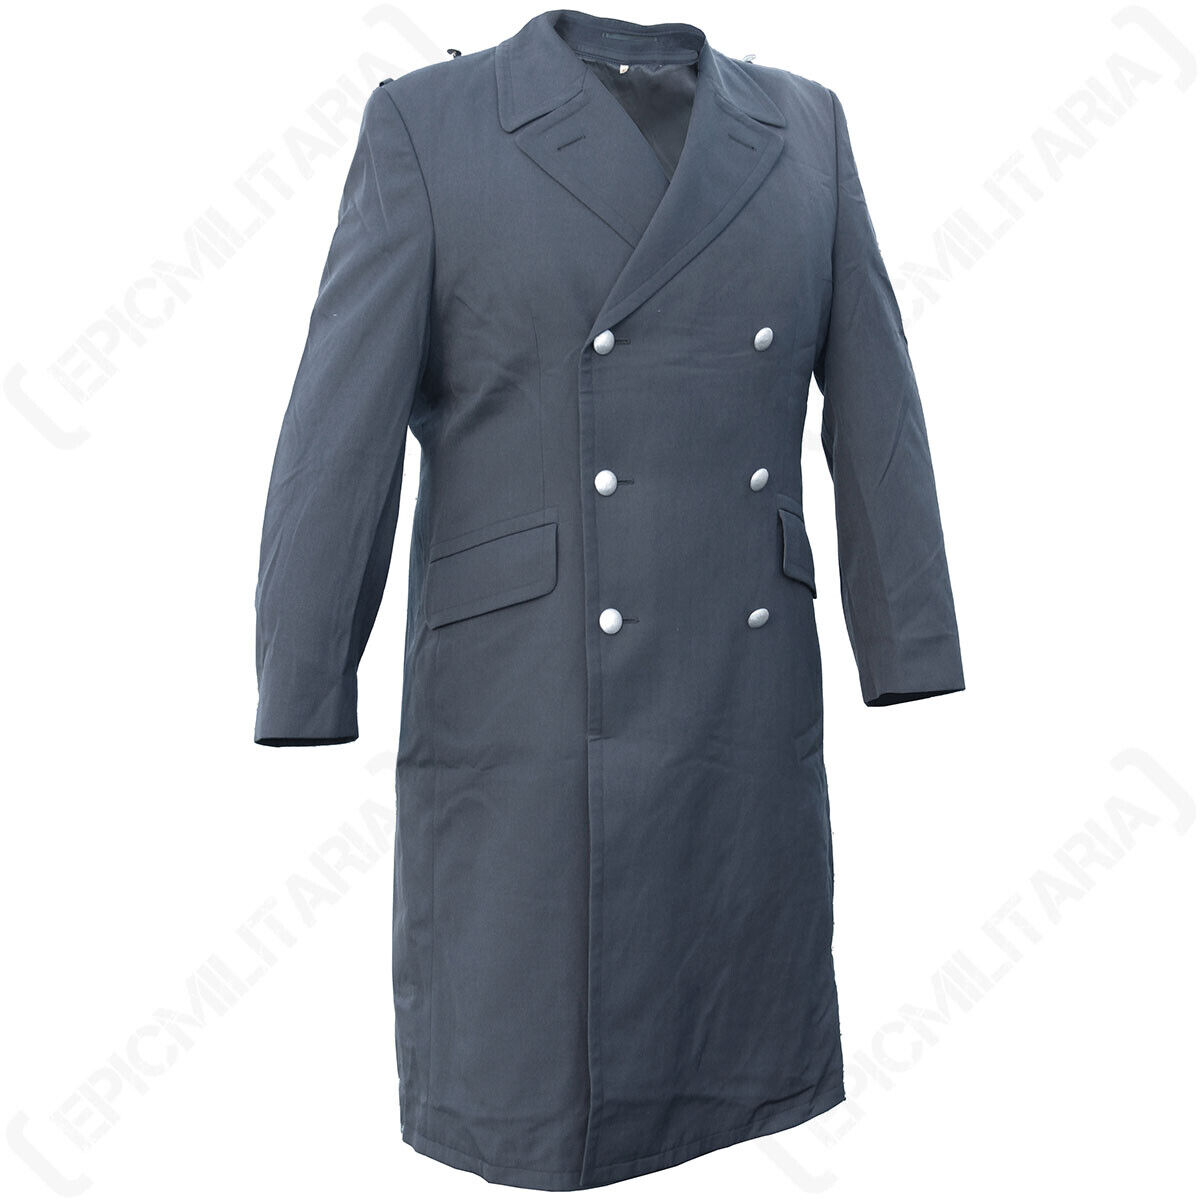 Original German Army Grey Coat - Grade 1 Military Surplus Long Winter Overcoat